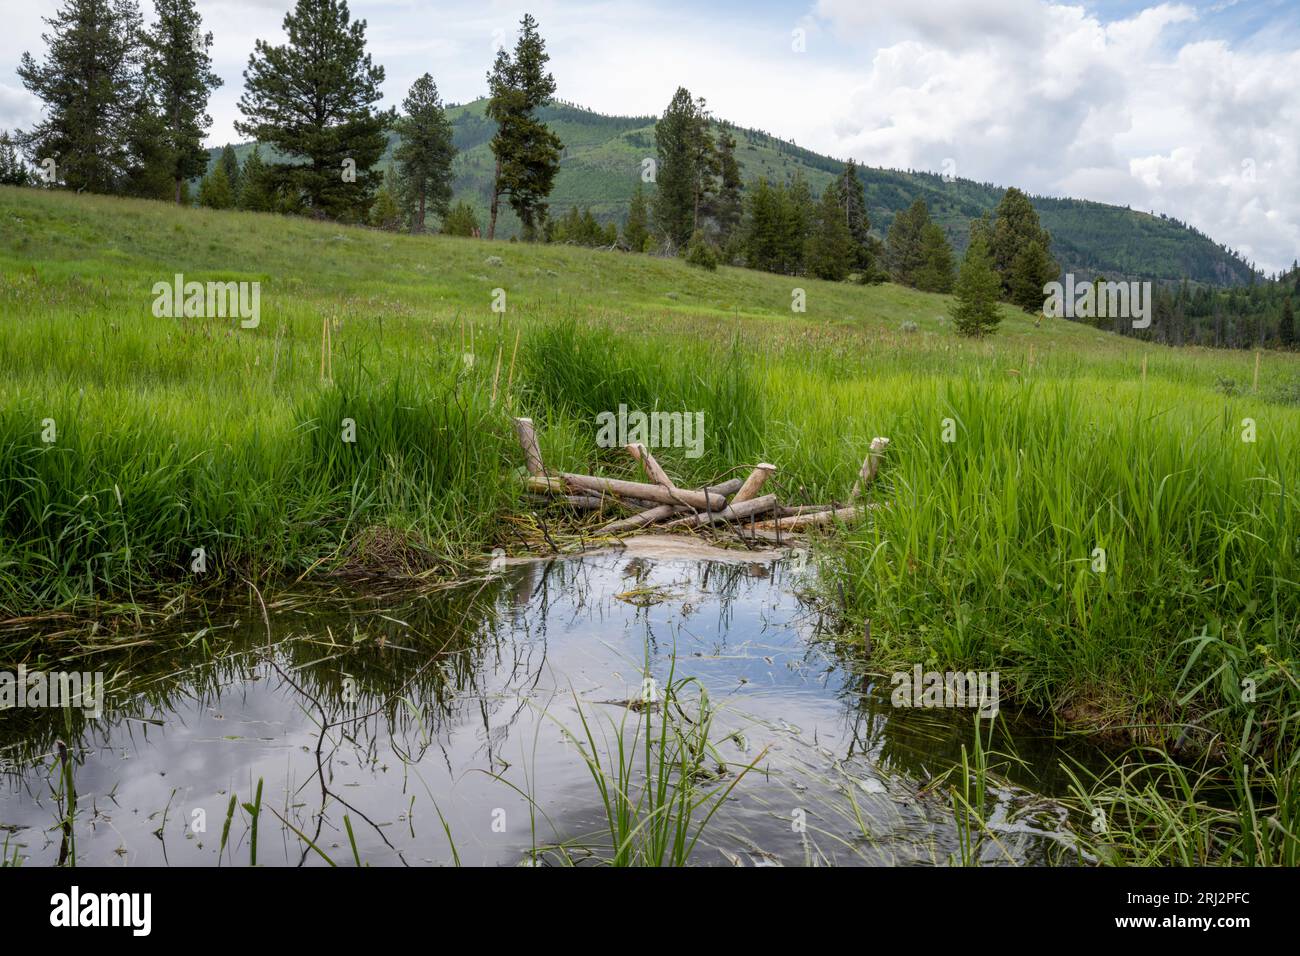 6/11/22.Wild Horse Creek, Montana. Analogues de castor dam (BDA) et semis de saule utilisés pour ralentir le débit d'eau du ruisseau redressé pour l'irrigation 100 ans Banque D'Images